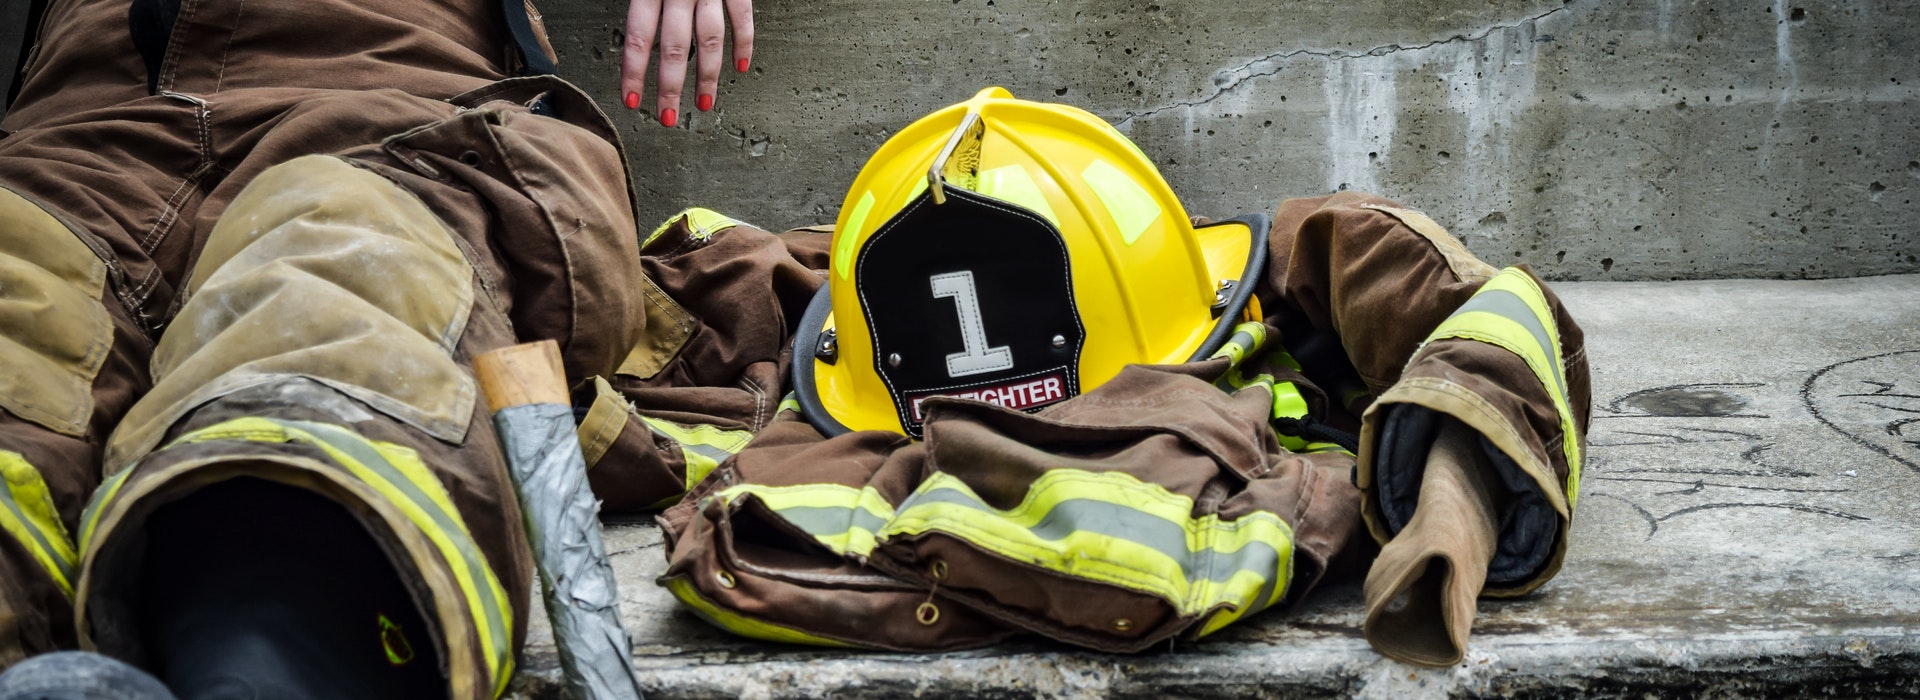 Un casque de sécurité jaune et une veste de pompier sont placés à côté d'un pompier assis par terre.